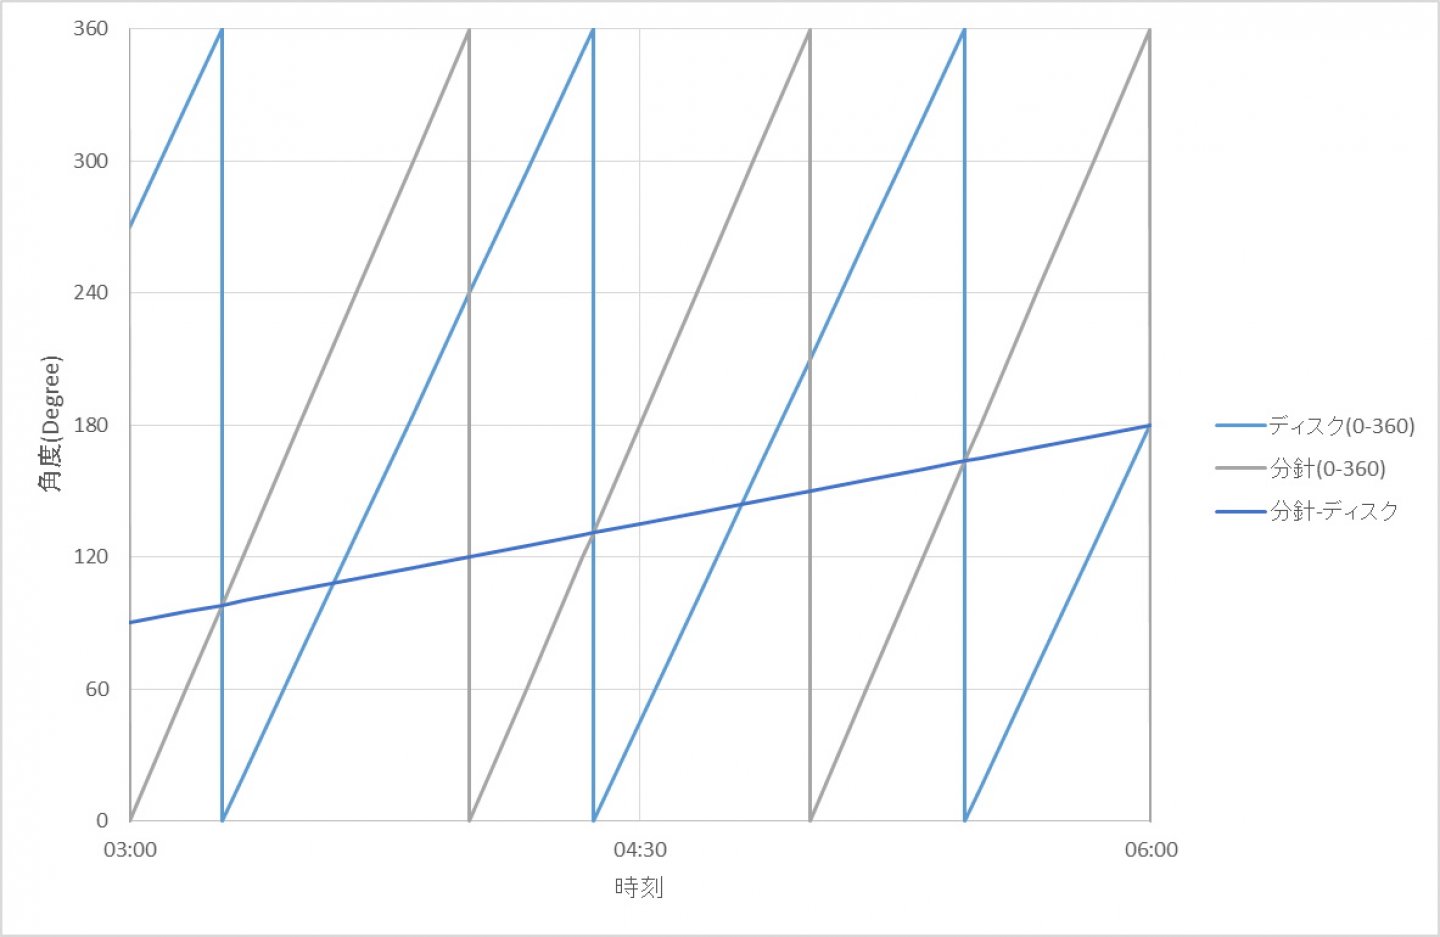 ファーブル・ルーバ 「レイダー ハープーン」の 特徴的なワンハンド表示をより詳細にグラフで理解する(数式控えめ)～ブランドのダイバーズウォッチ・ヒストリー付！